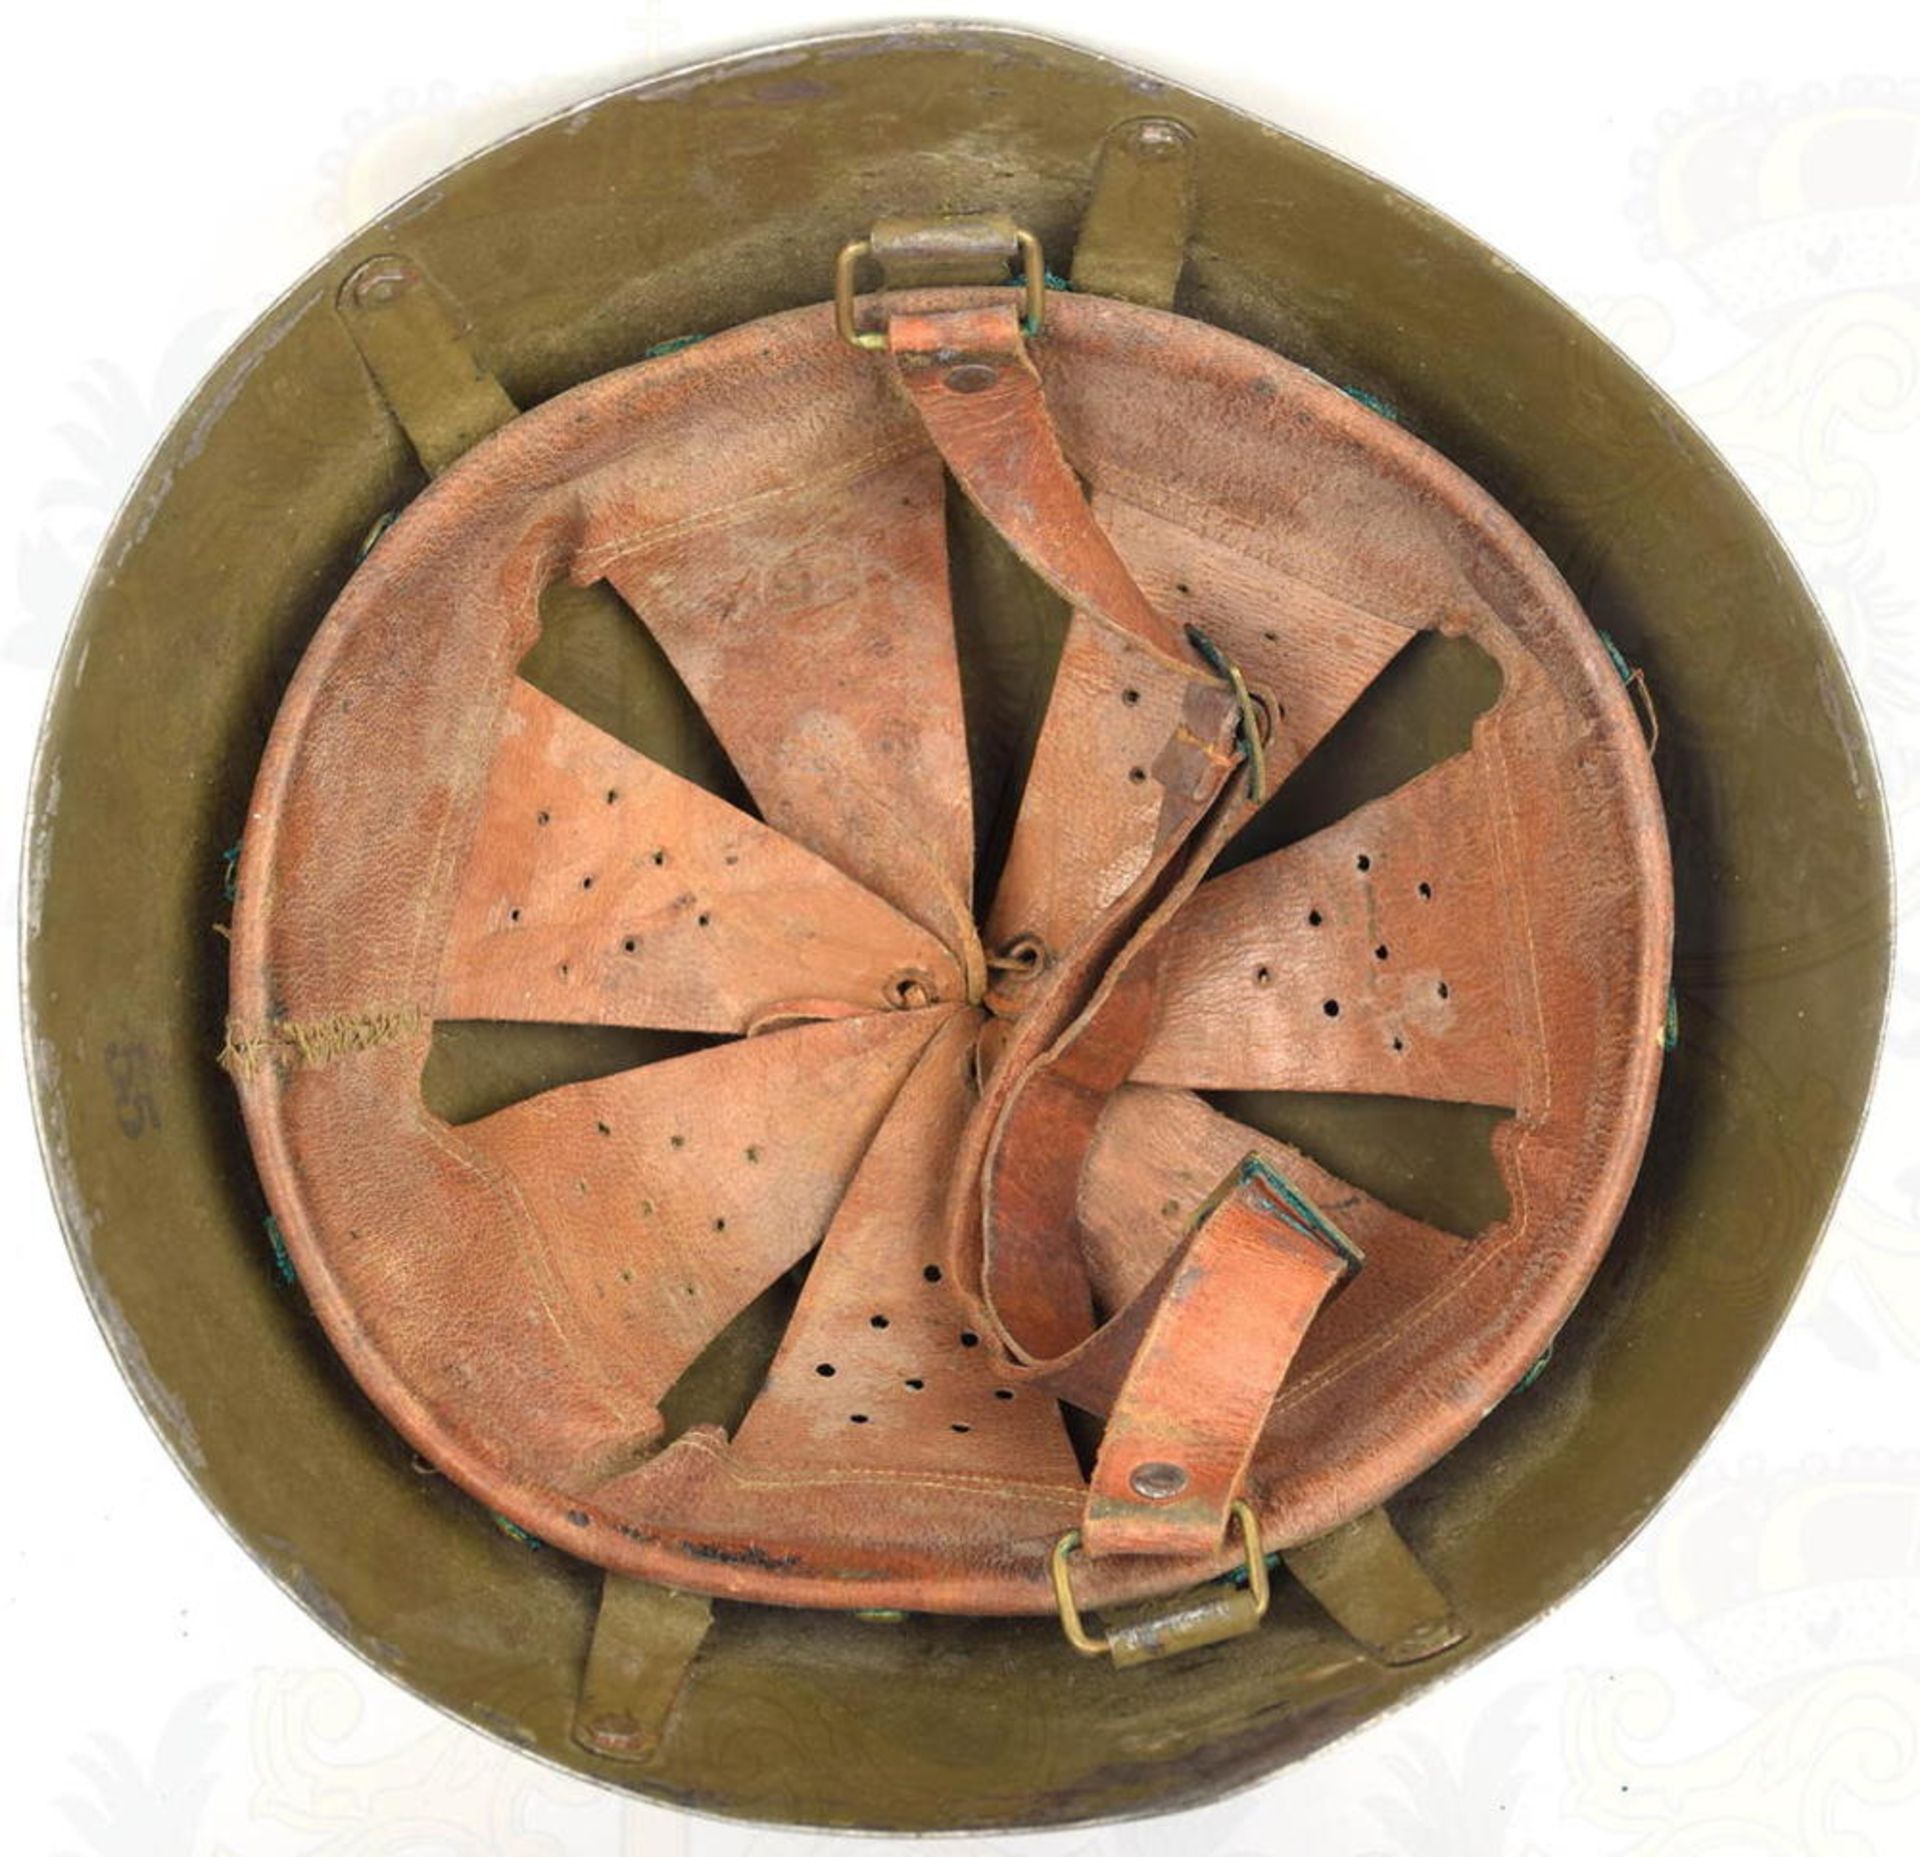 STAHLHELM MODELL 1934/39 GRIECHISCHES HEER, Glocke innen u. außen olivgrün lackiert, tls. zerkratzt  - Bild 4 aus 4